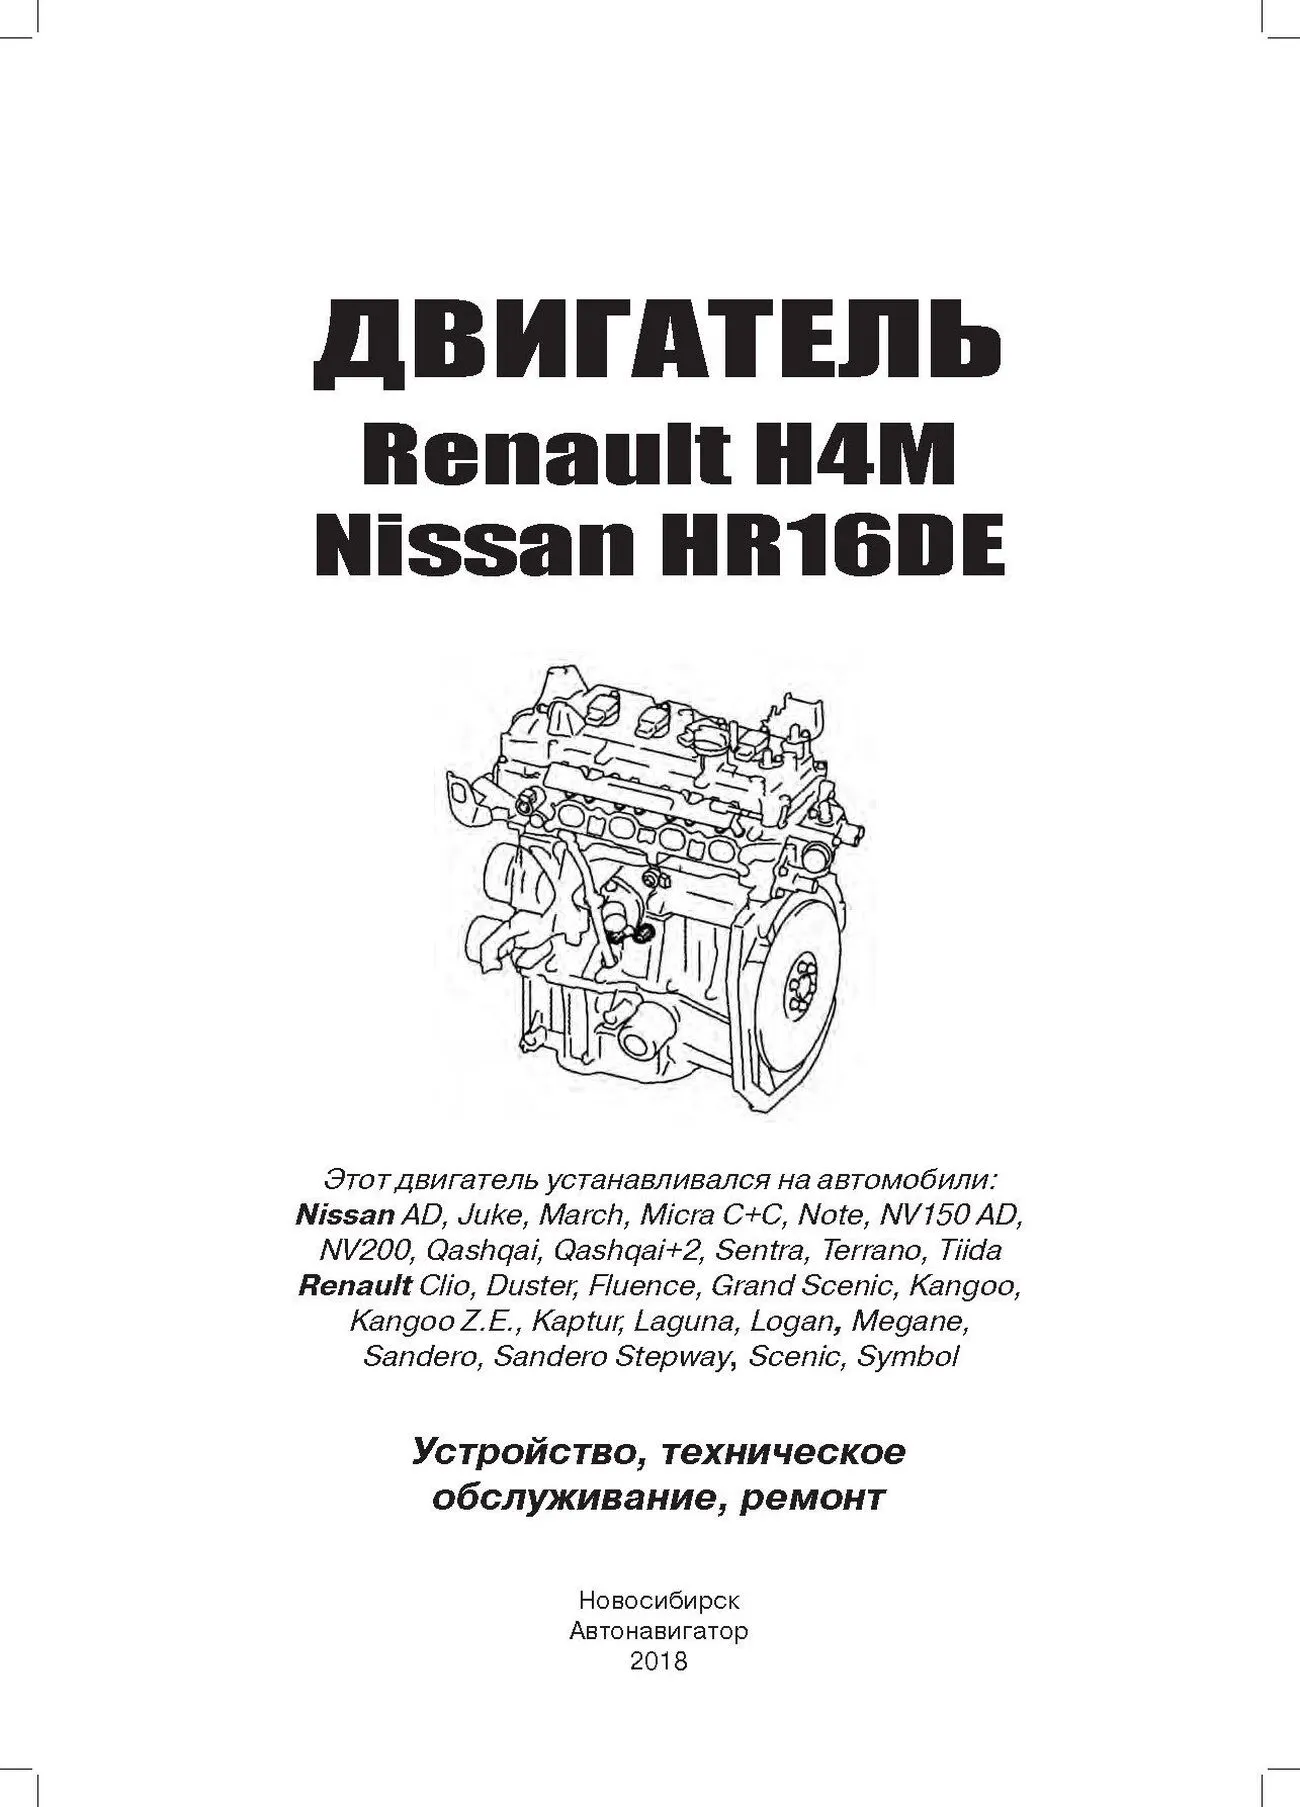 Книга: Бензиновые двигатели NISSAN HR16DE / RENAULT H4M рем., экспл., то | Автонавигатор